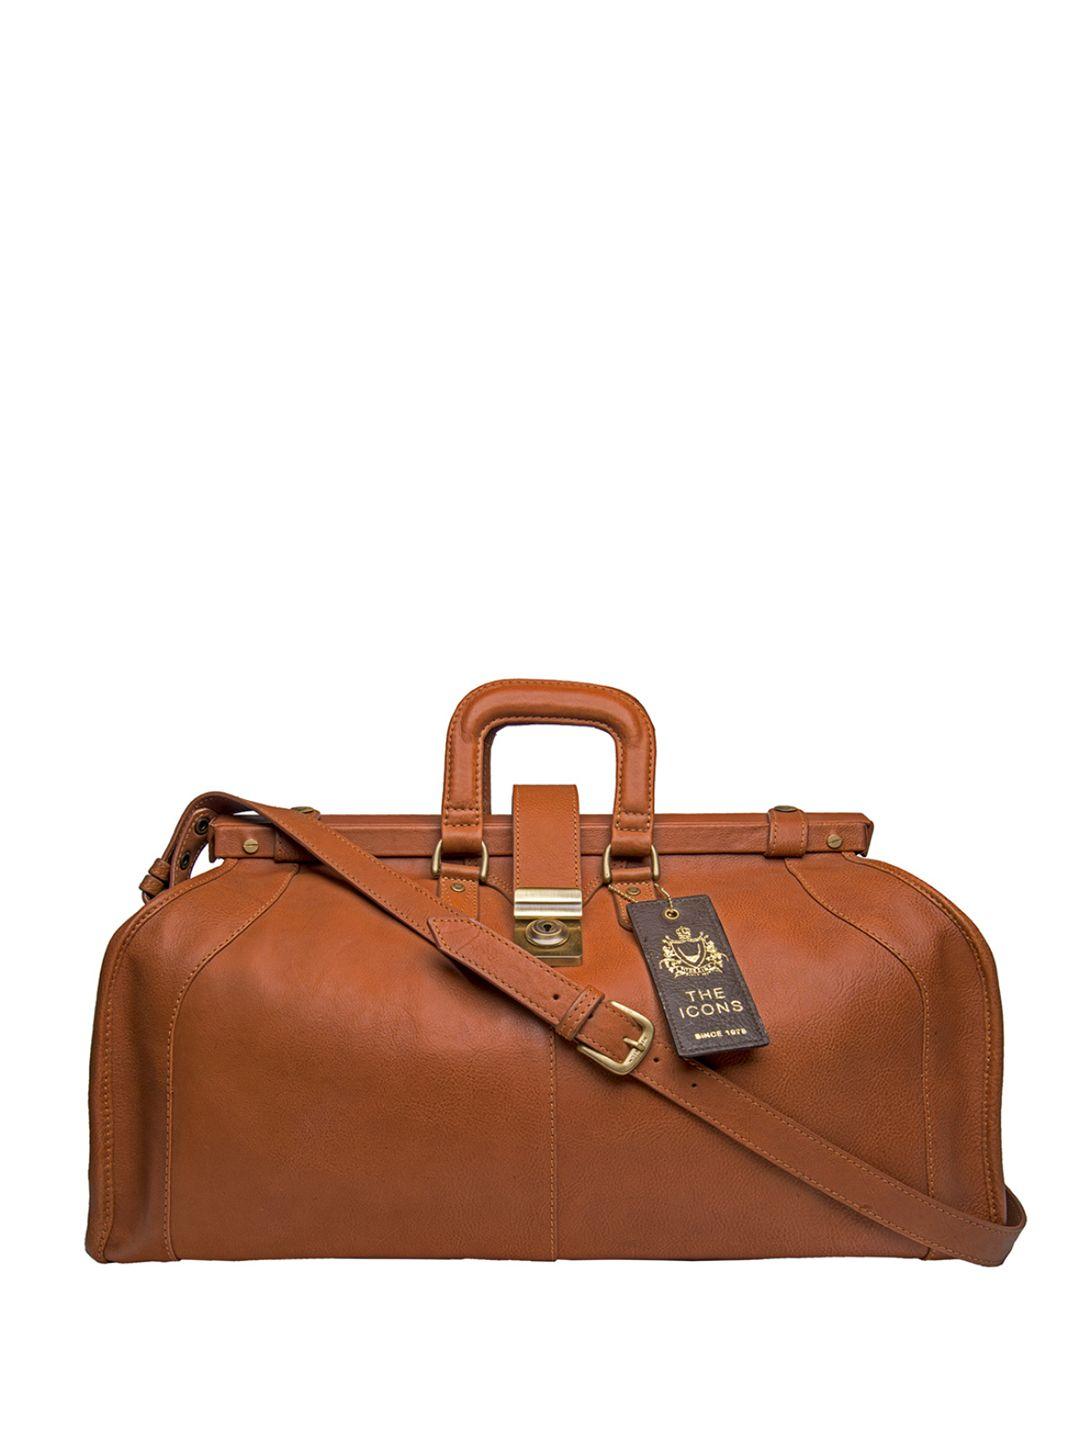 hidesign-men-tan-brown-solid-leather-safari-duffel-bag